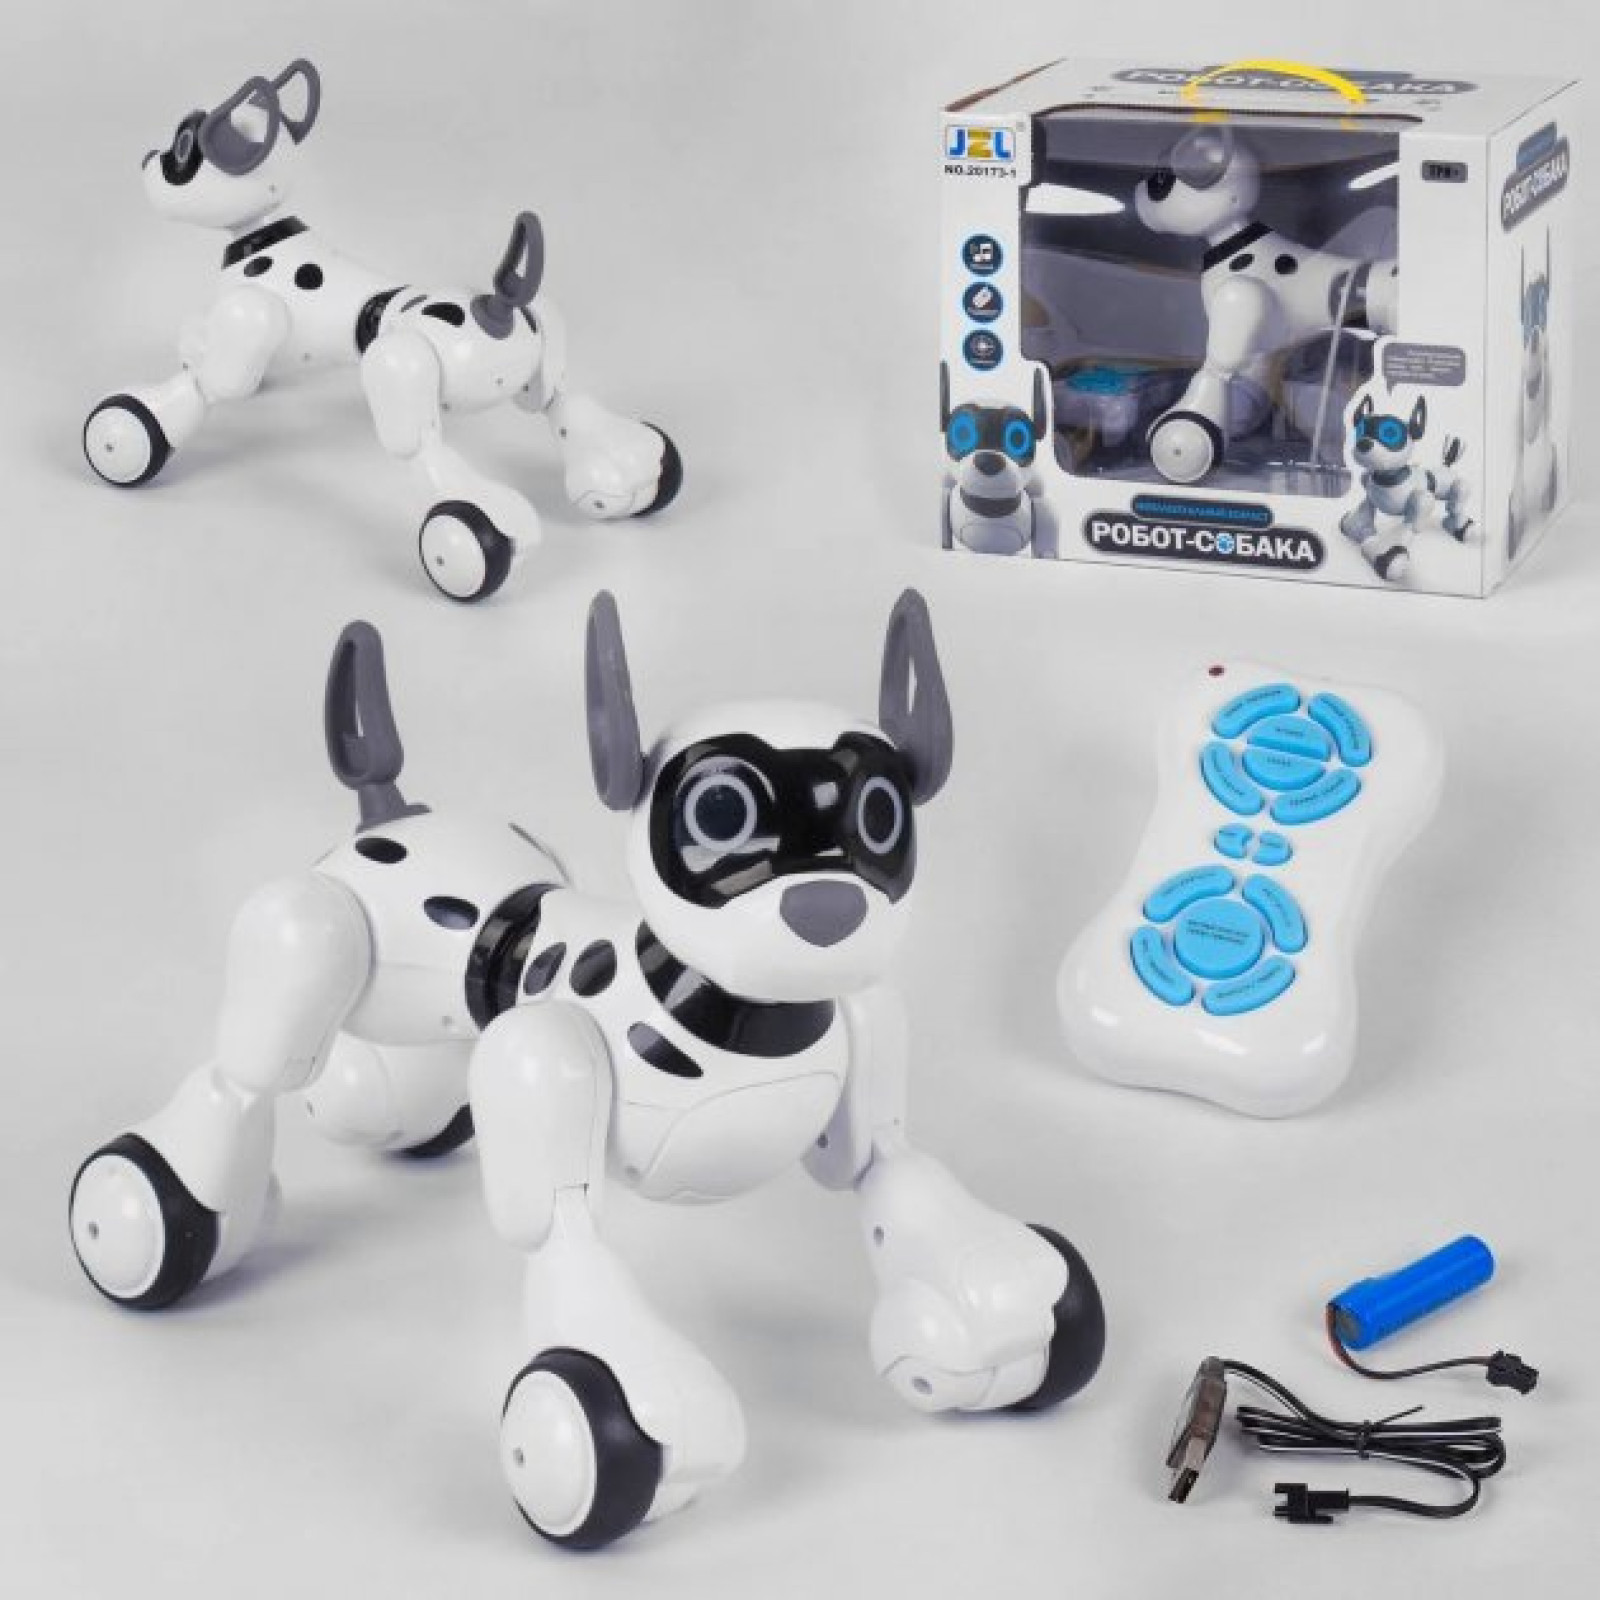 Интерактивная многофункциональная игрушка робот-собака робот JZL 20173-1 на радиоуправлении со звуком и светом 205723